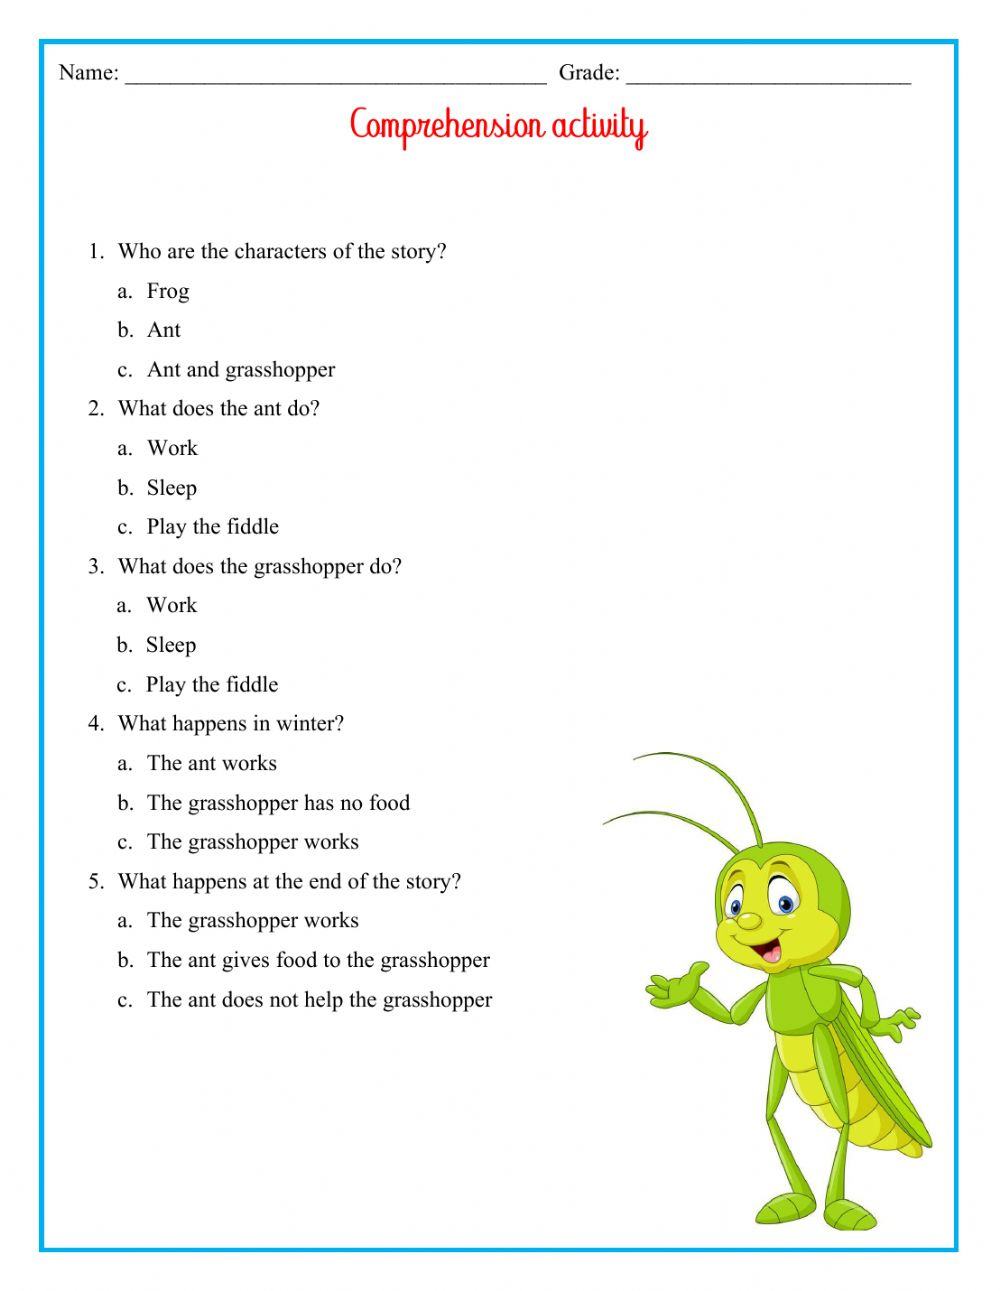 grasshopper-anatomy-worksheet-answer-key-anatomy-worksheets